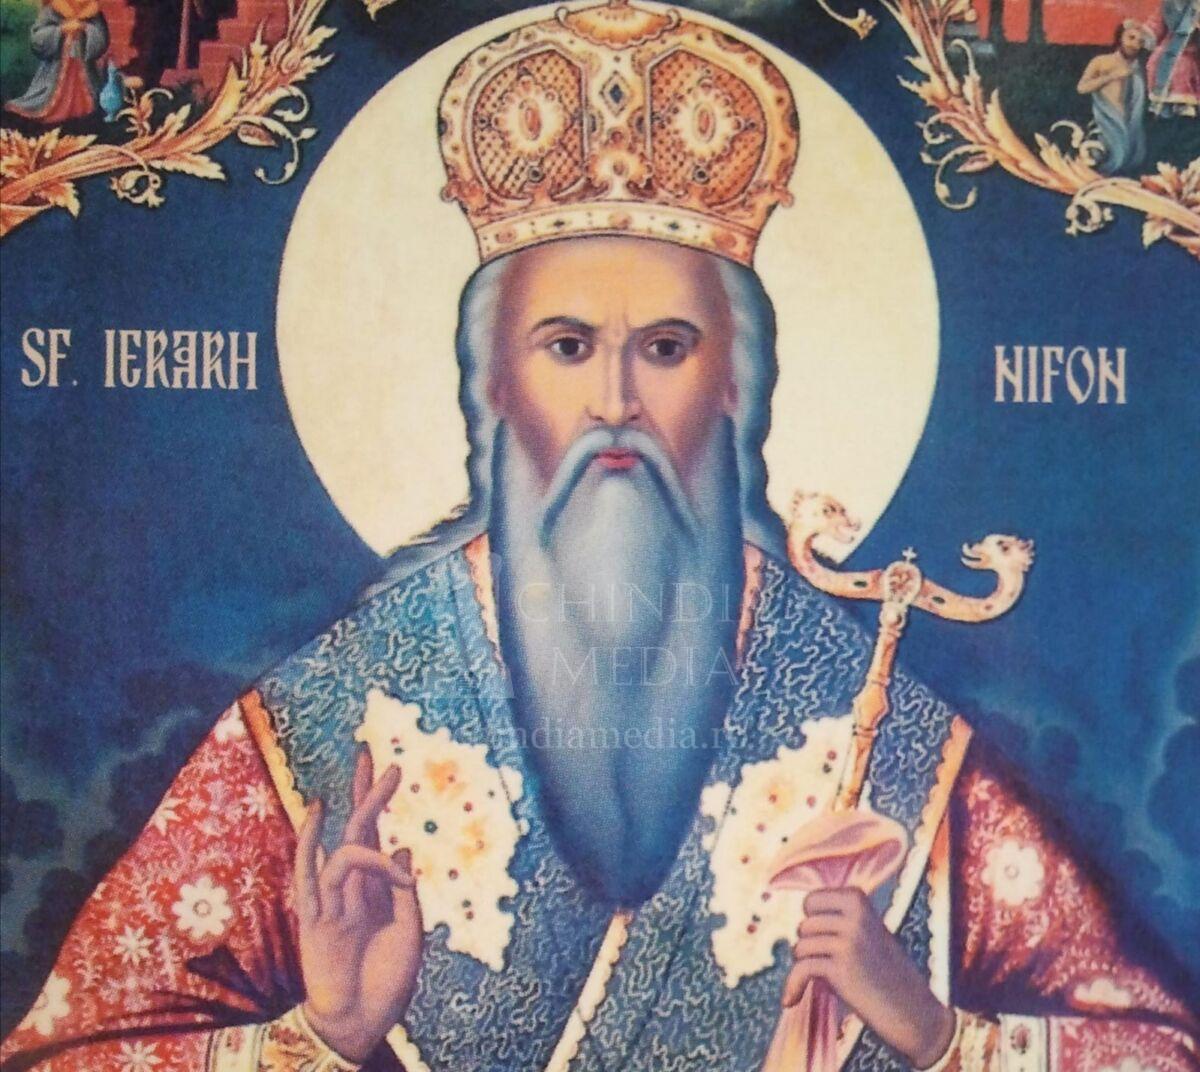 You are currently viewing EDITORIAL: Epoca și personalitatea Patriarhului Nifon (1434/1440-1508) în percepția lui I. D. Petrescu (1818-1903) – Partea a II-a